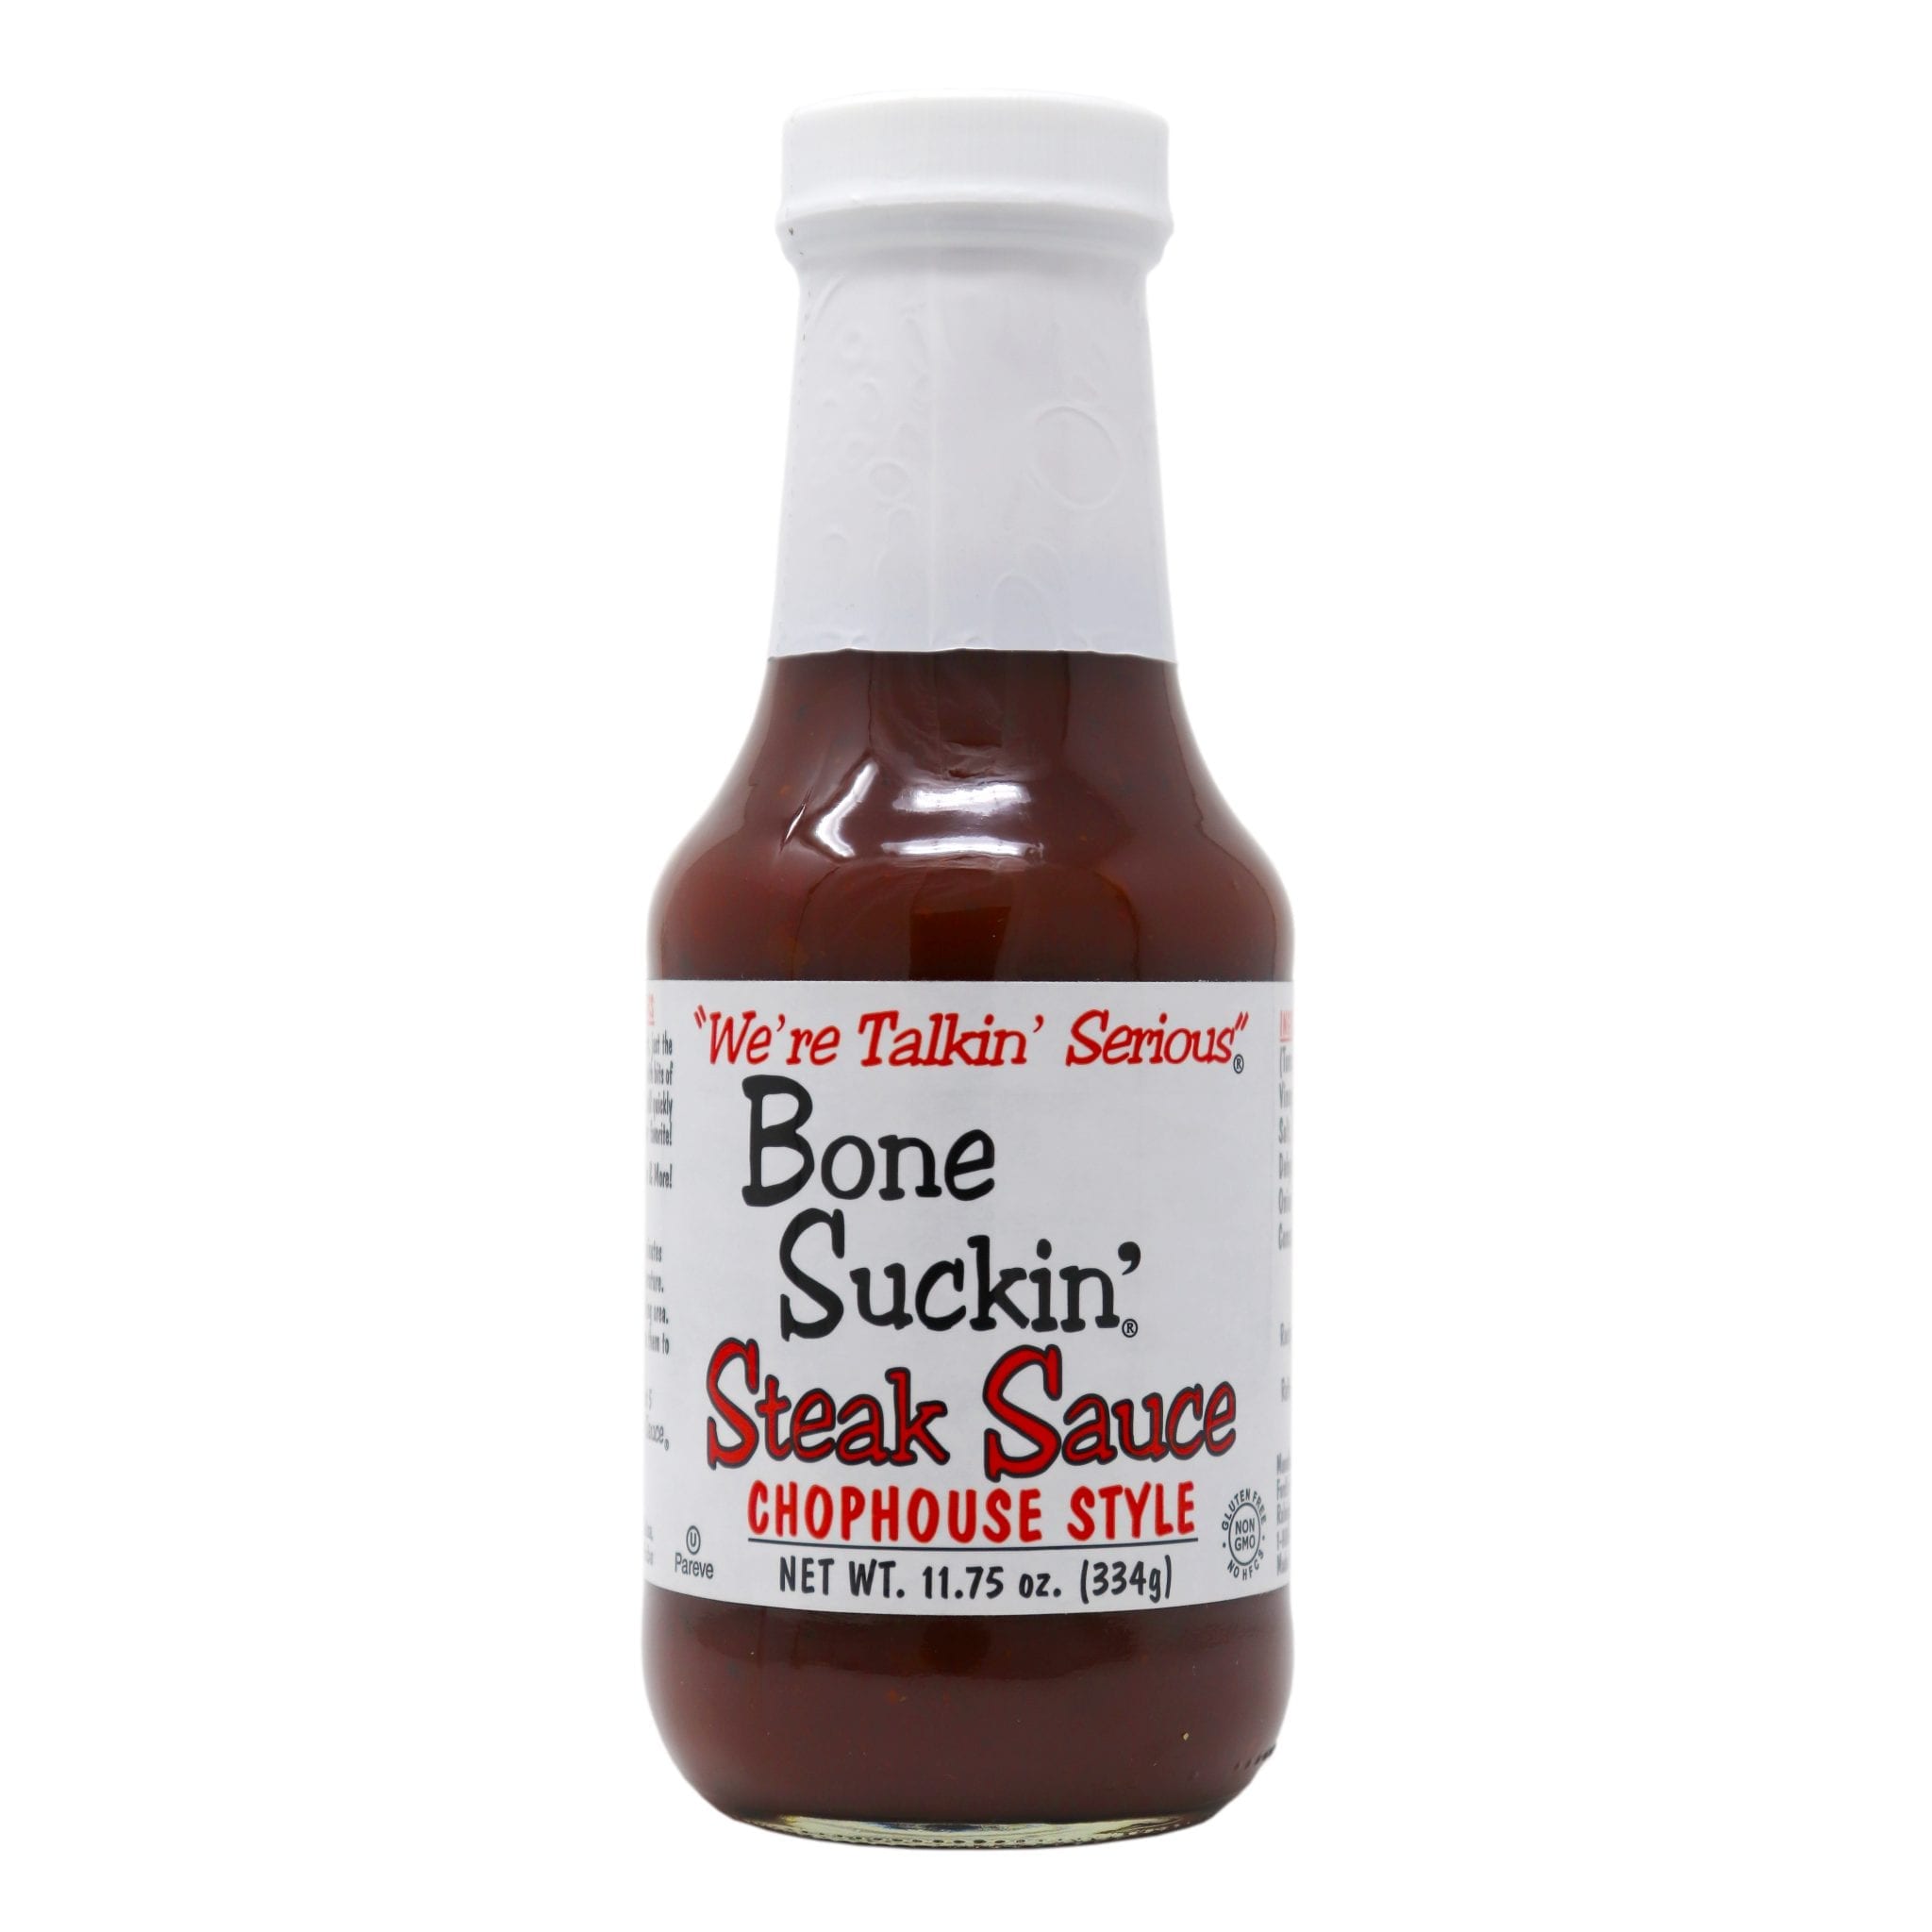 Bone Suckin’ Steak Sauce Chophouse Style 11.75 oz